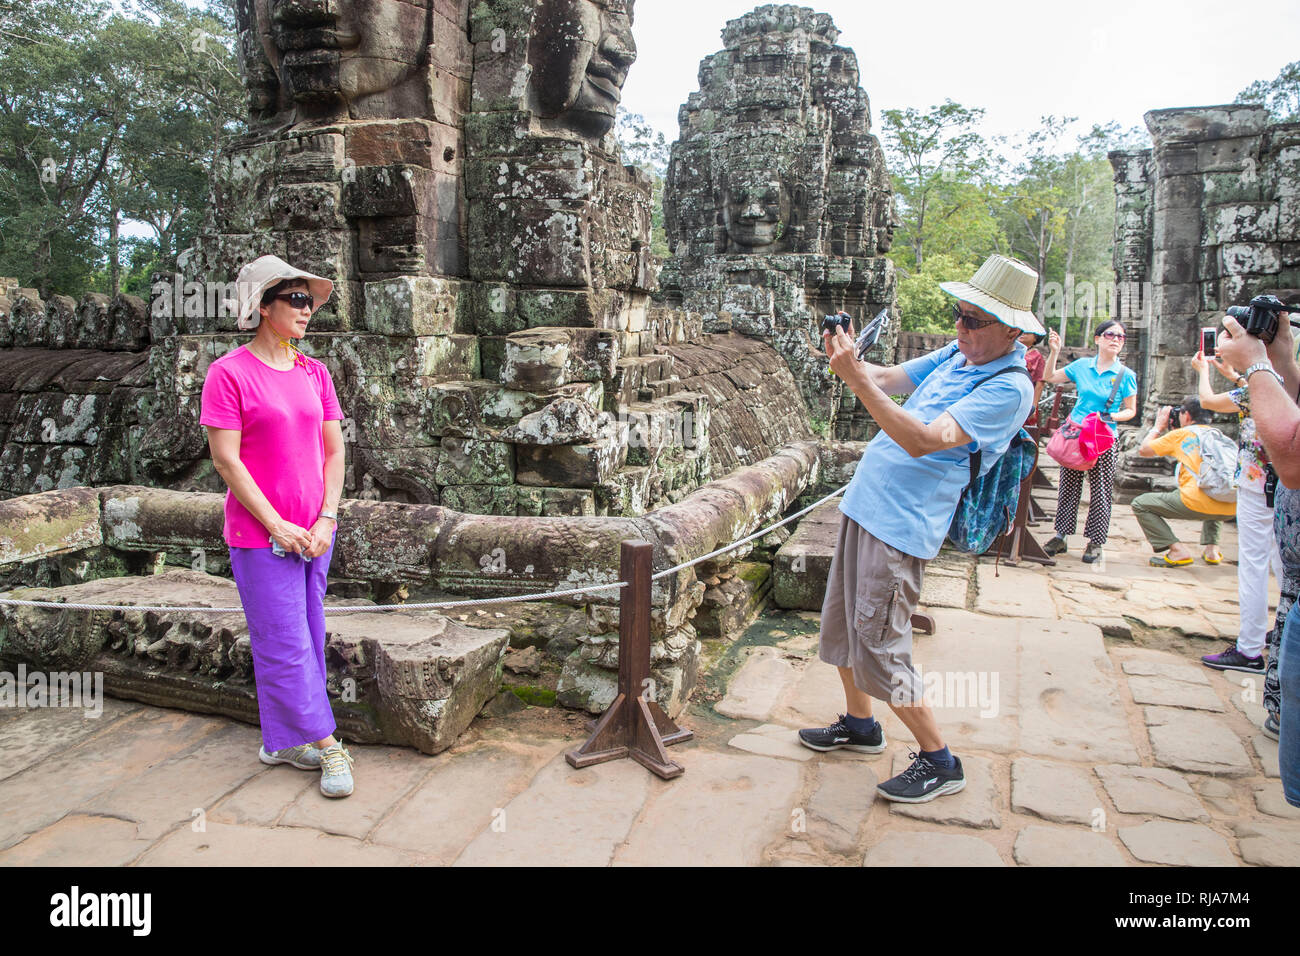 Siem Reap, Angkor, Tempel Bayon, von Touristen überlaufen, Paar beim fotografieren Foto Stock